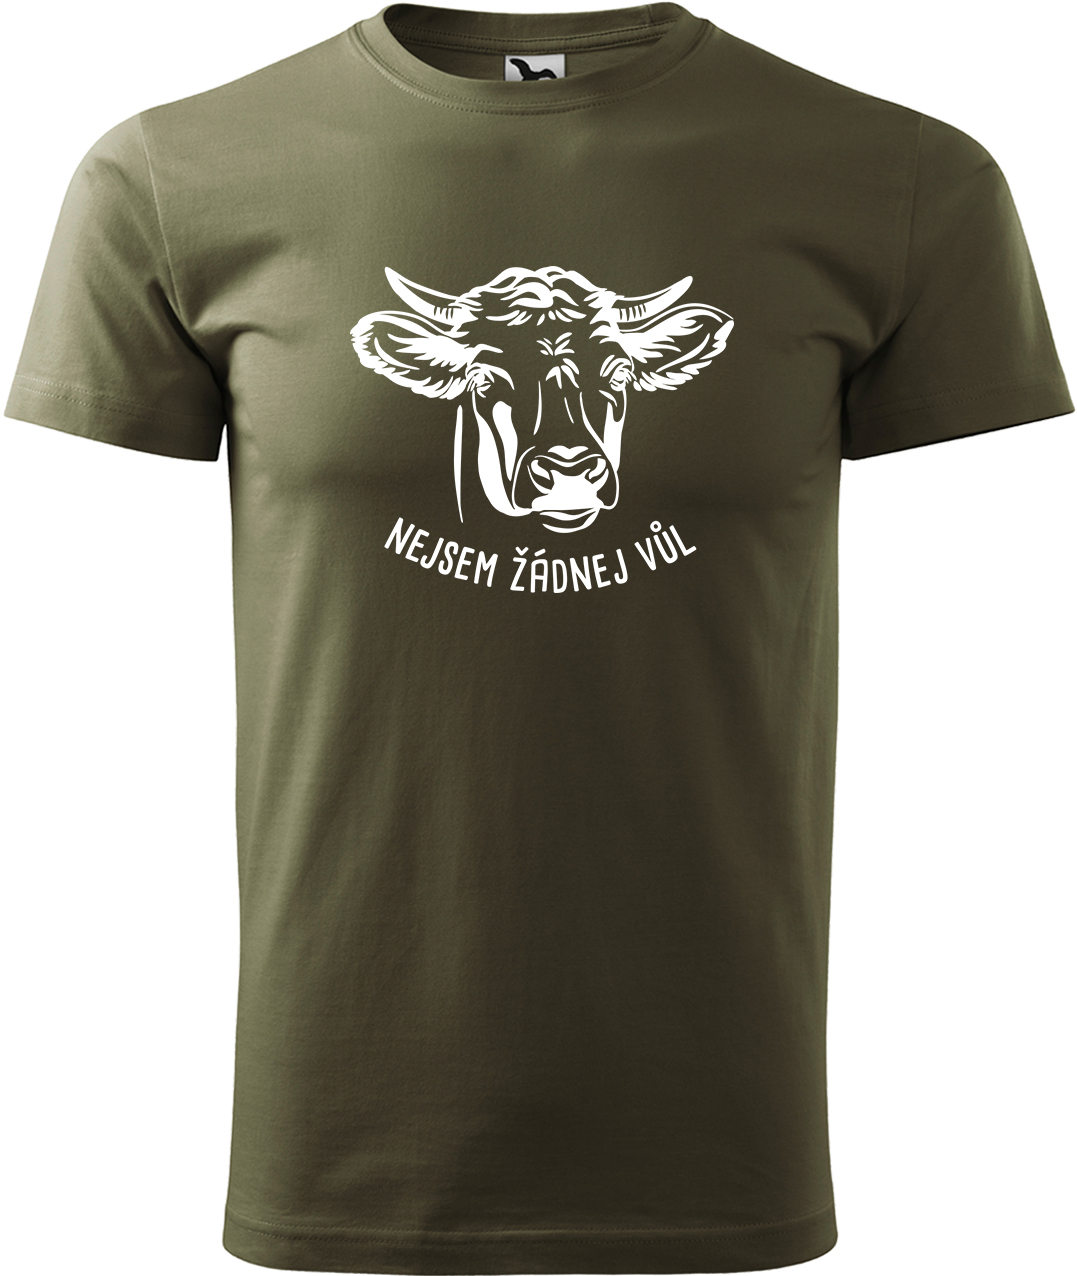 Pánské tričko s krávou - Nejsem žádnej vůl Velikost: M, Barva: Military (69), Střih: pánský